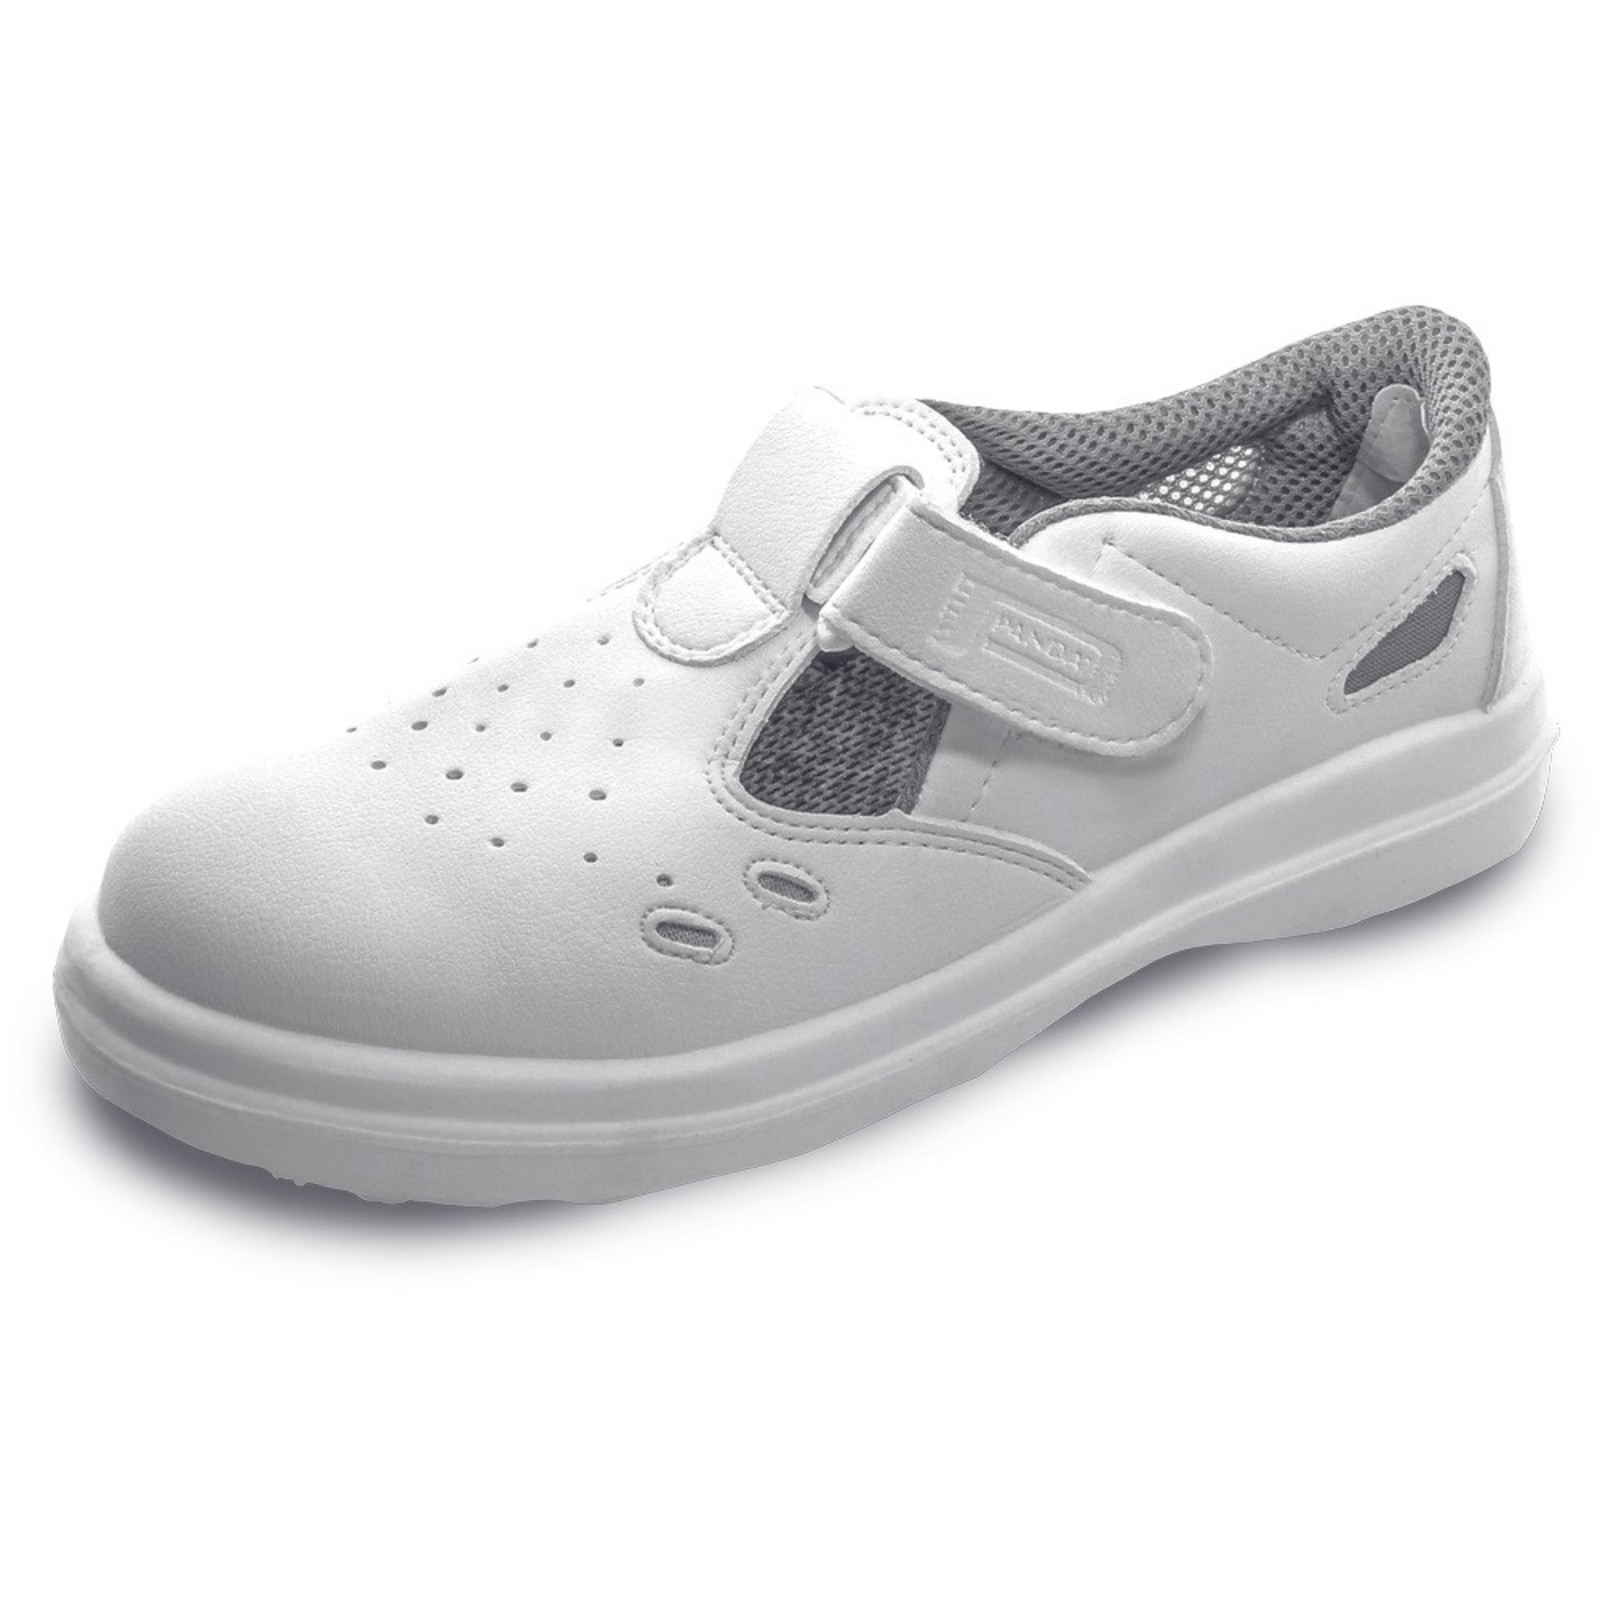 Bezpečnostné sandále Panda Sanitary Lybra S1 SRC - veľkosť: 37, farba: biela